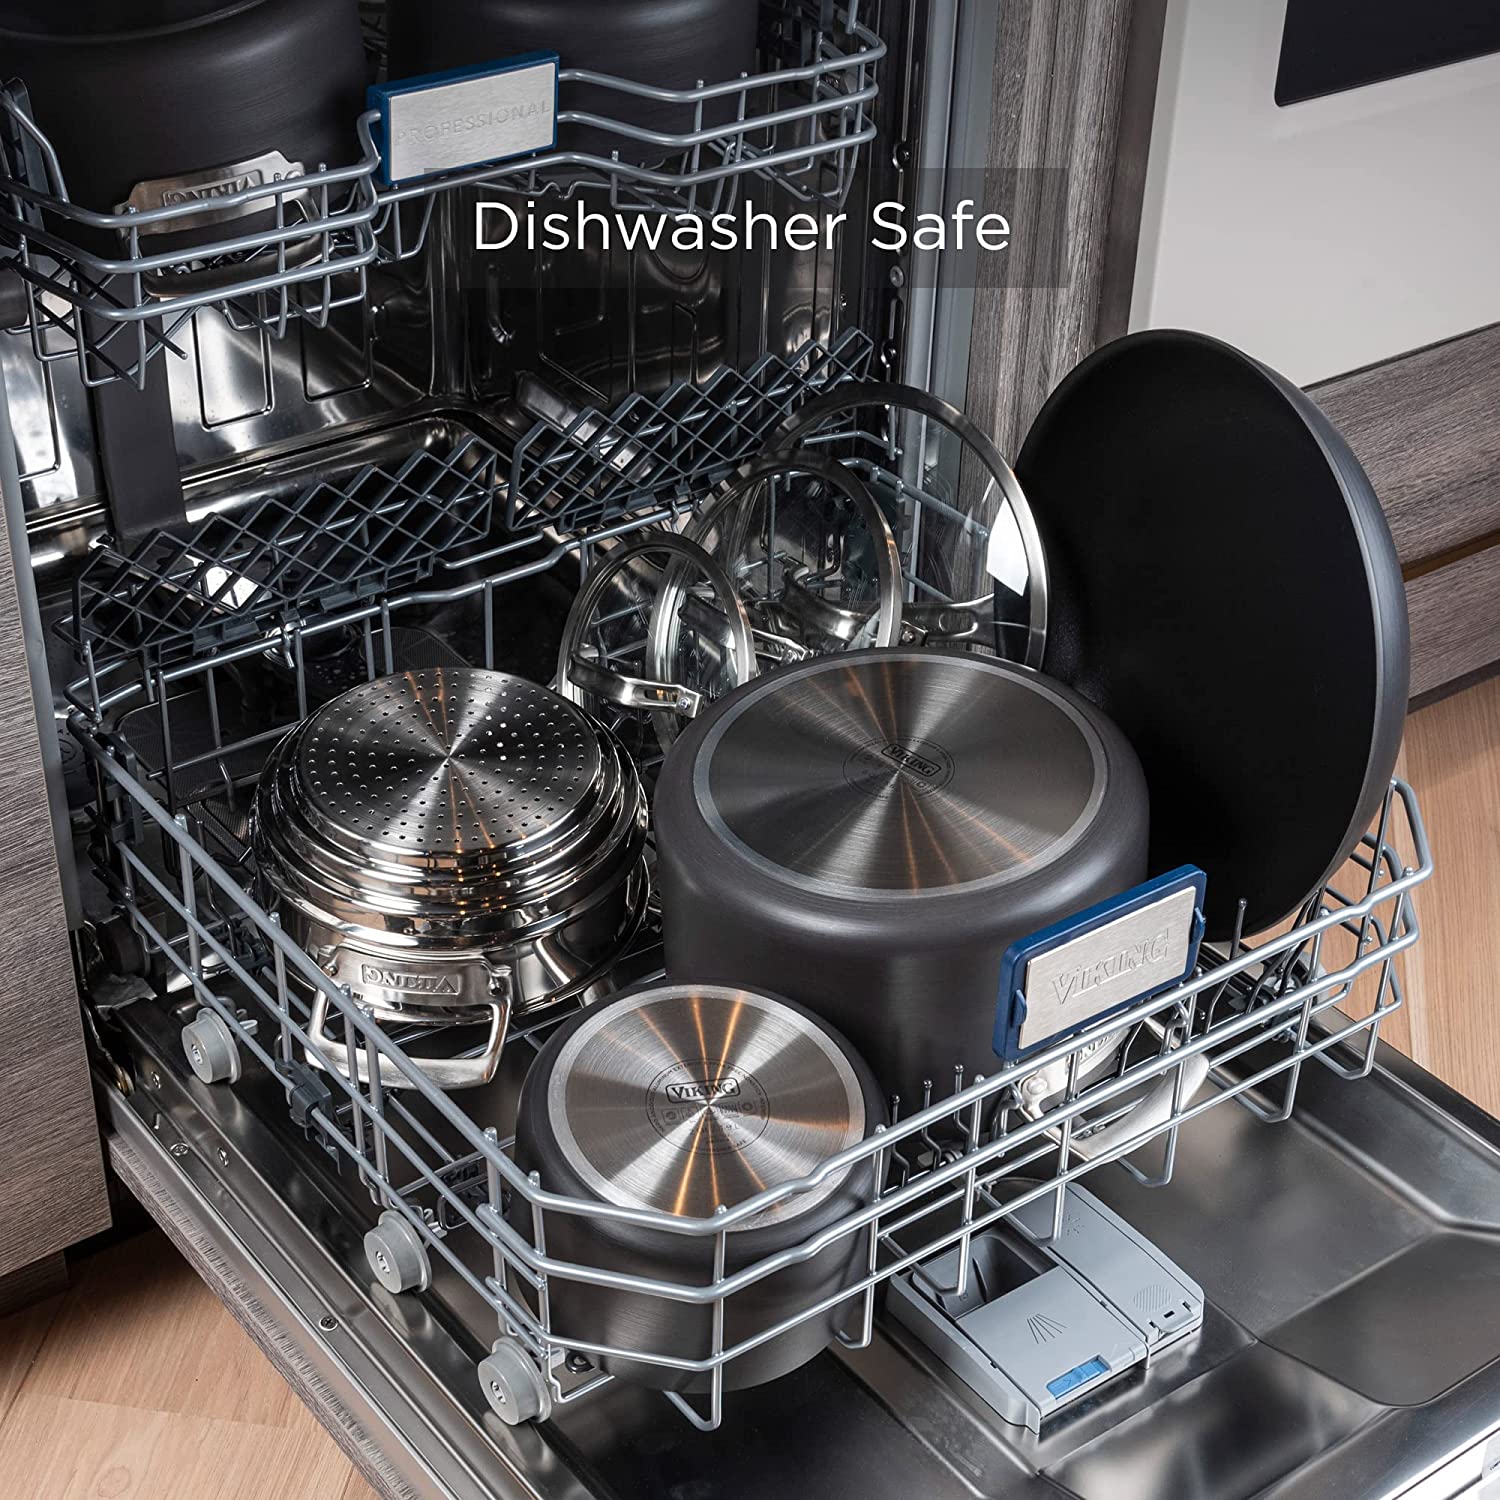 Modern dishwashers-Viking Culinary Hard Anodized Nonstick Cookware Set, 10 Piece, Grayi